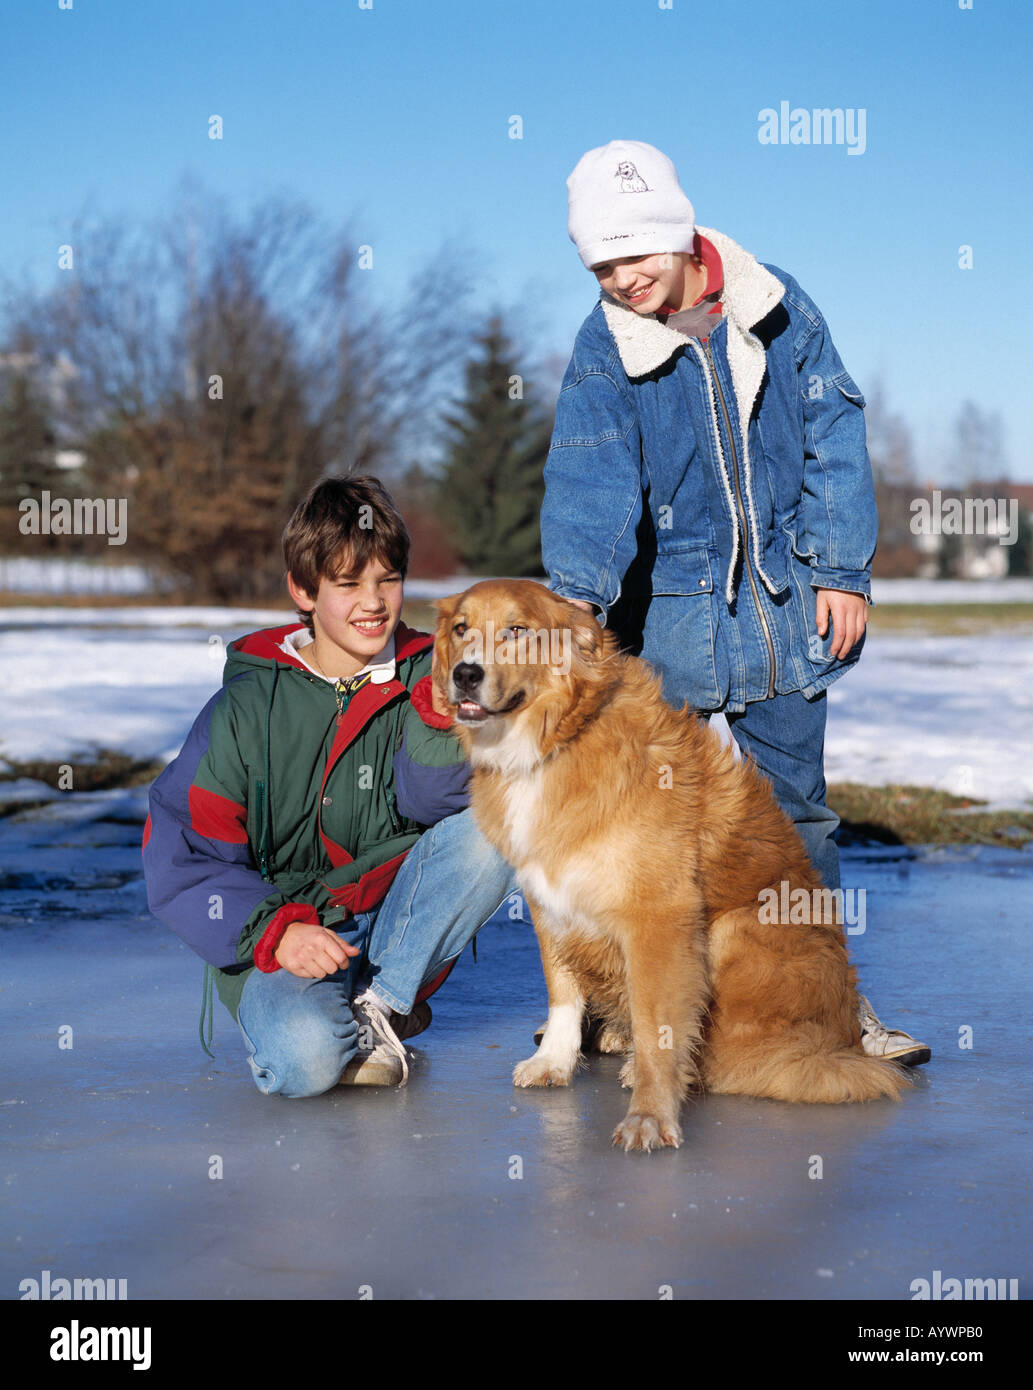 zwei jungen mit einem Hund auf einer Eisfläche, Eisfläche, Eisdecke, Winter, winterliche, Winter Kleidung, winter, Kleidung, Wollmütze, Kind, Kinder, Tierwelt Stockfoto